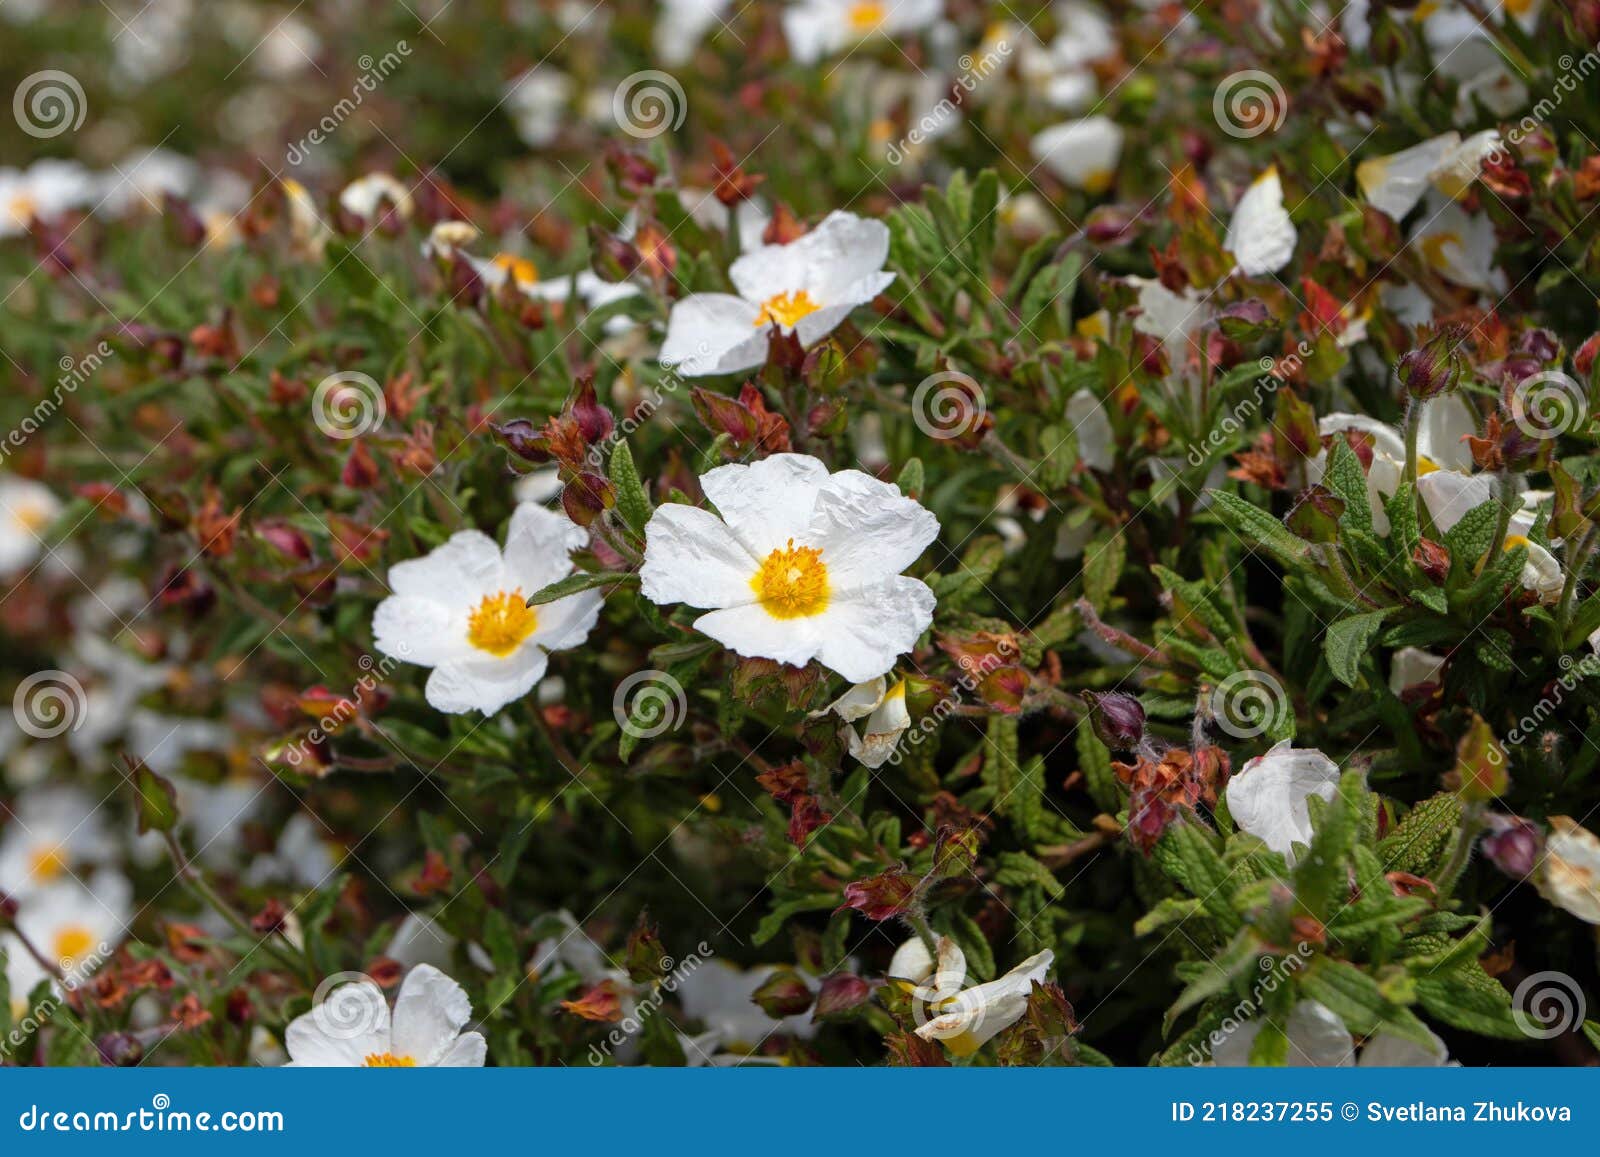 cistus salvifolius oder sageleaved rockrose white flowers